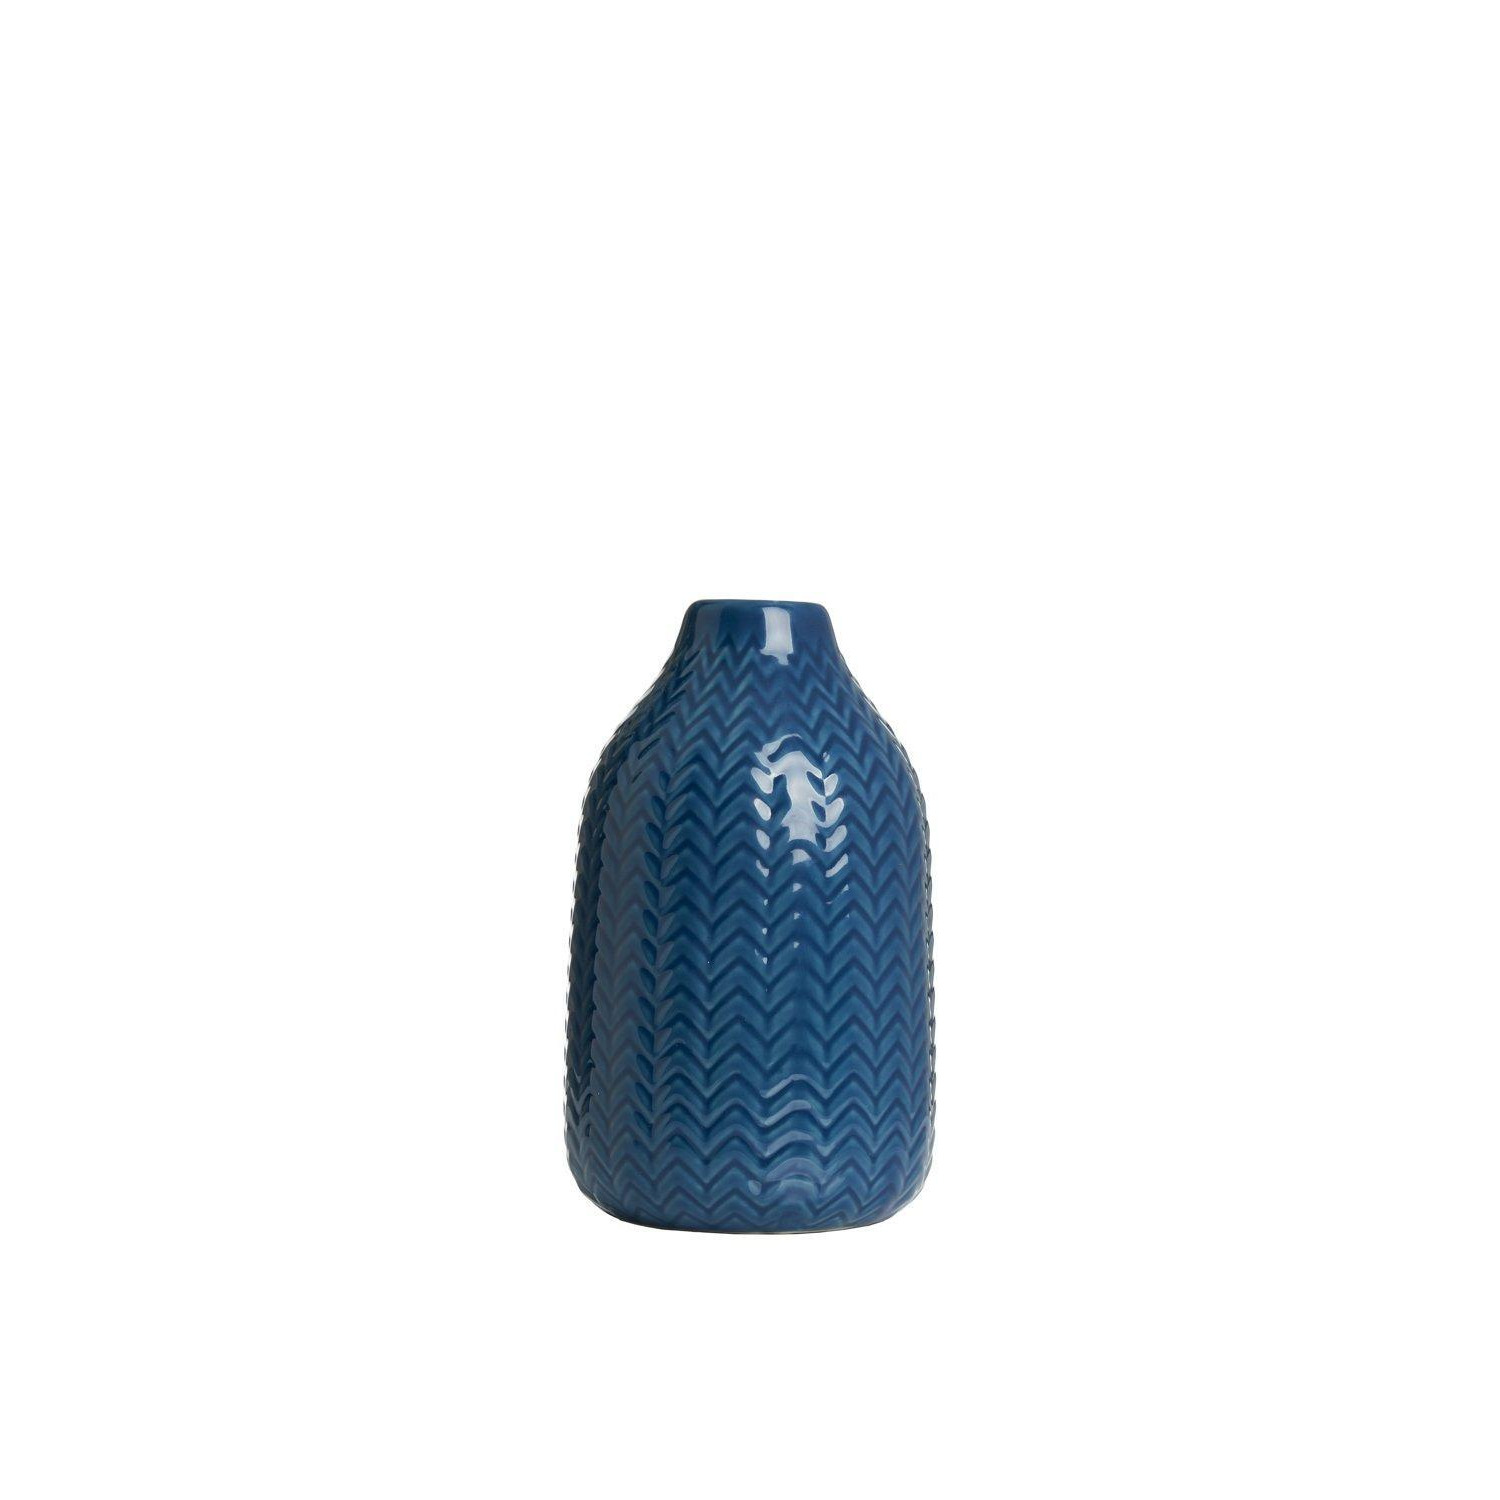 Cheveron Ceramic Vase - image 1